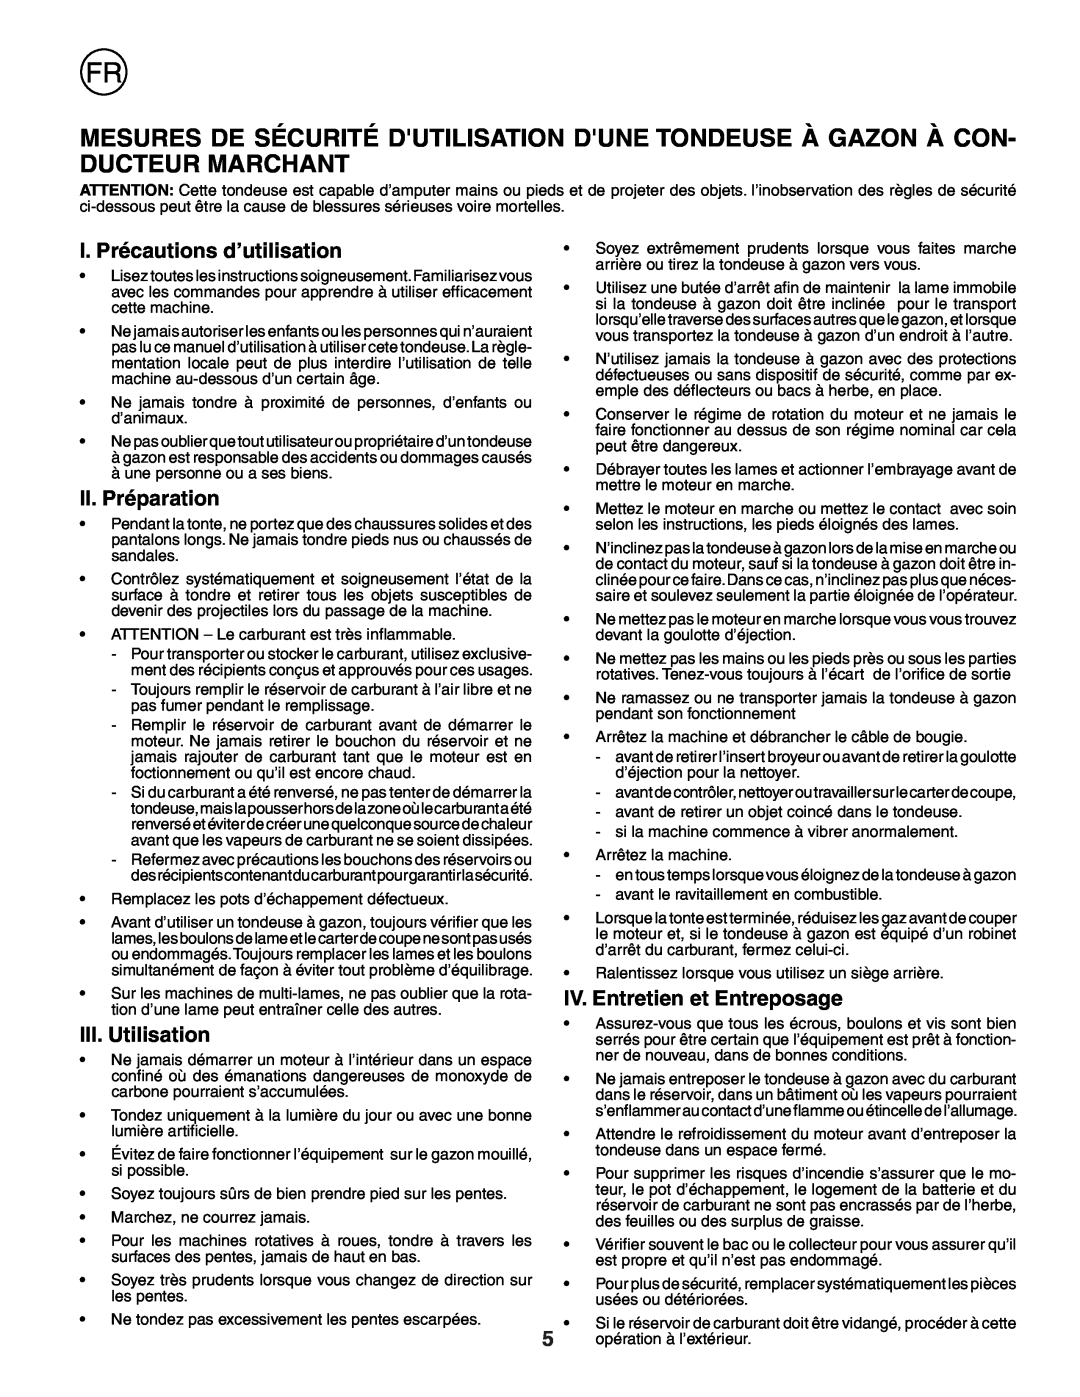 Husqvarna J50 I. Précautions d’utilisation, II. Préparation, III. Utilisation, IV. Entretien et Entreposage 